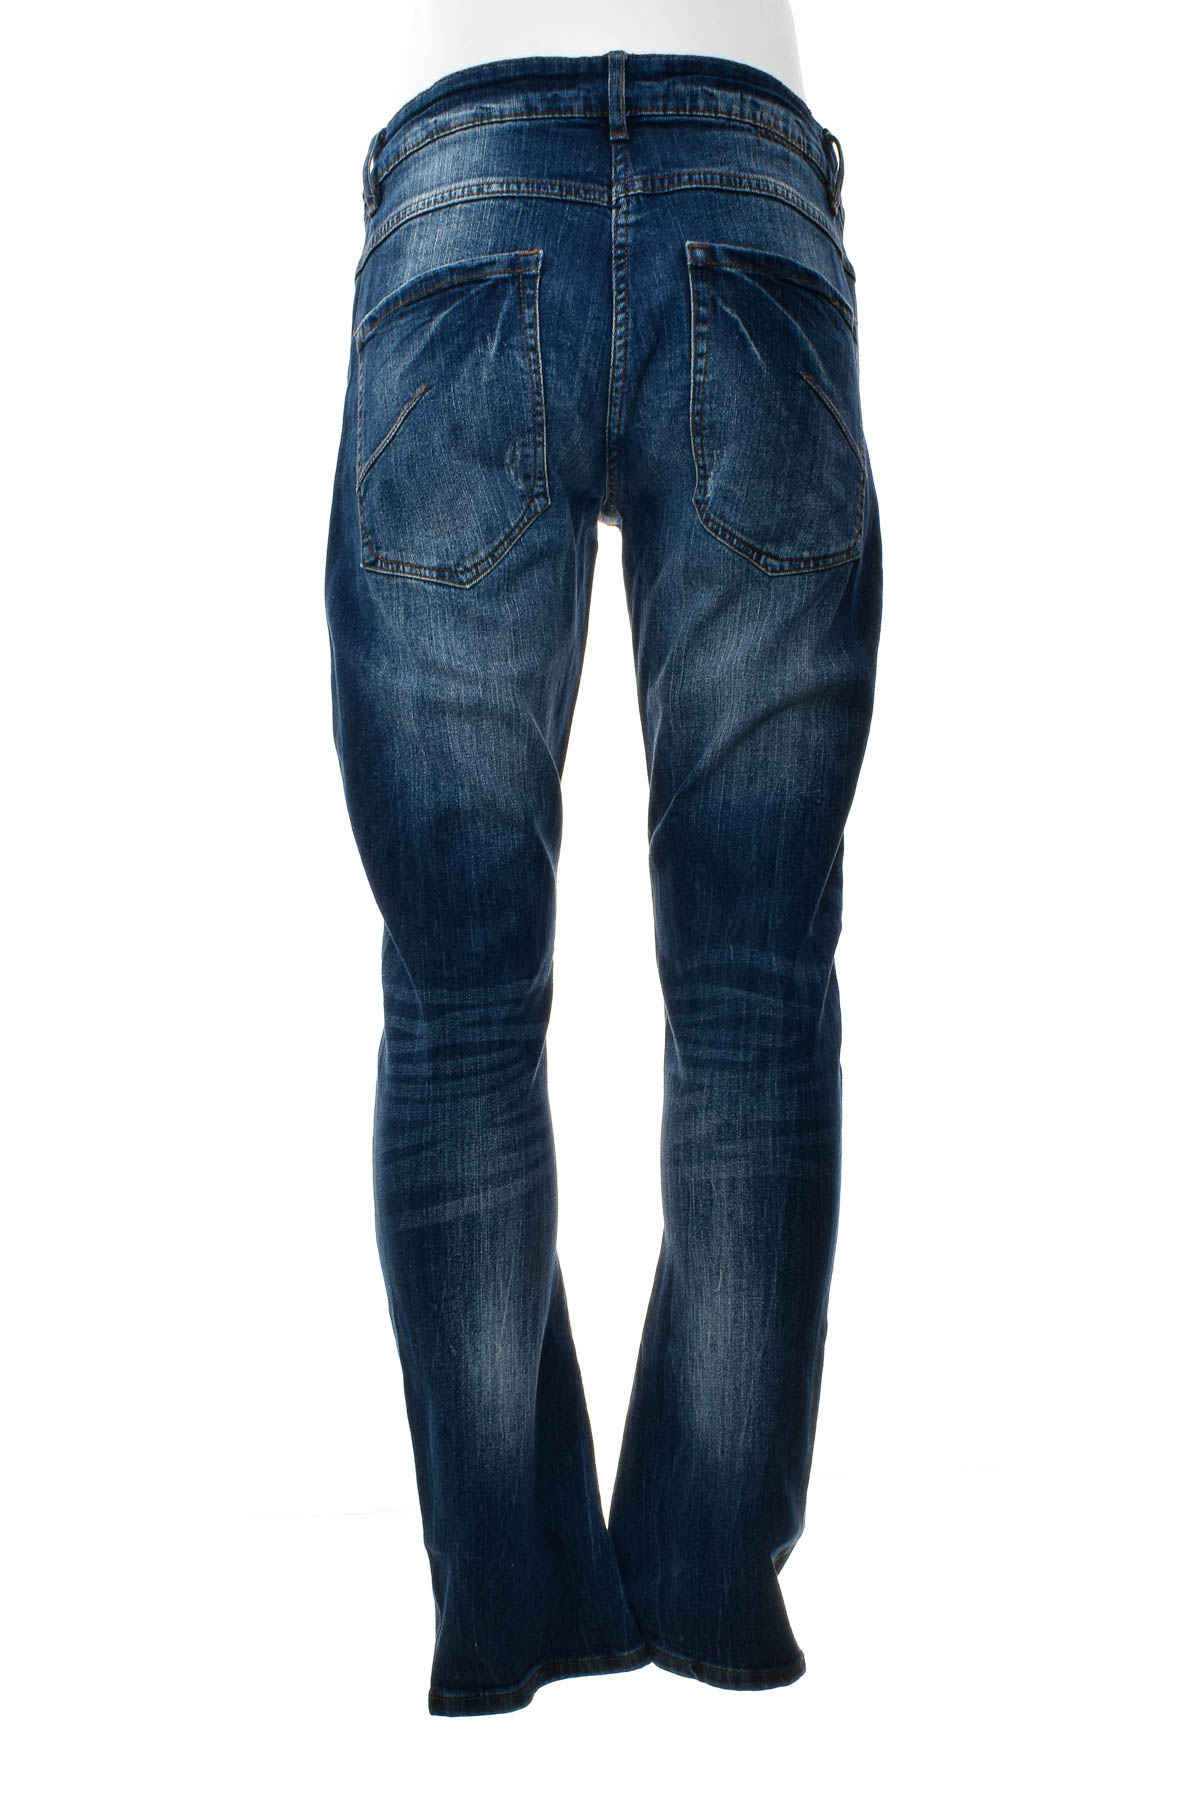 Jeans pentru bărbăți - Blue Motion - 1